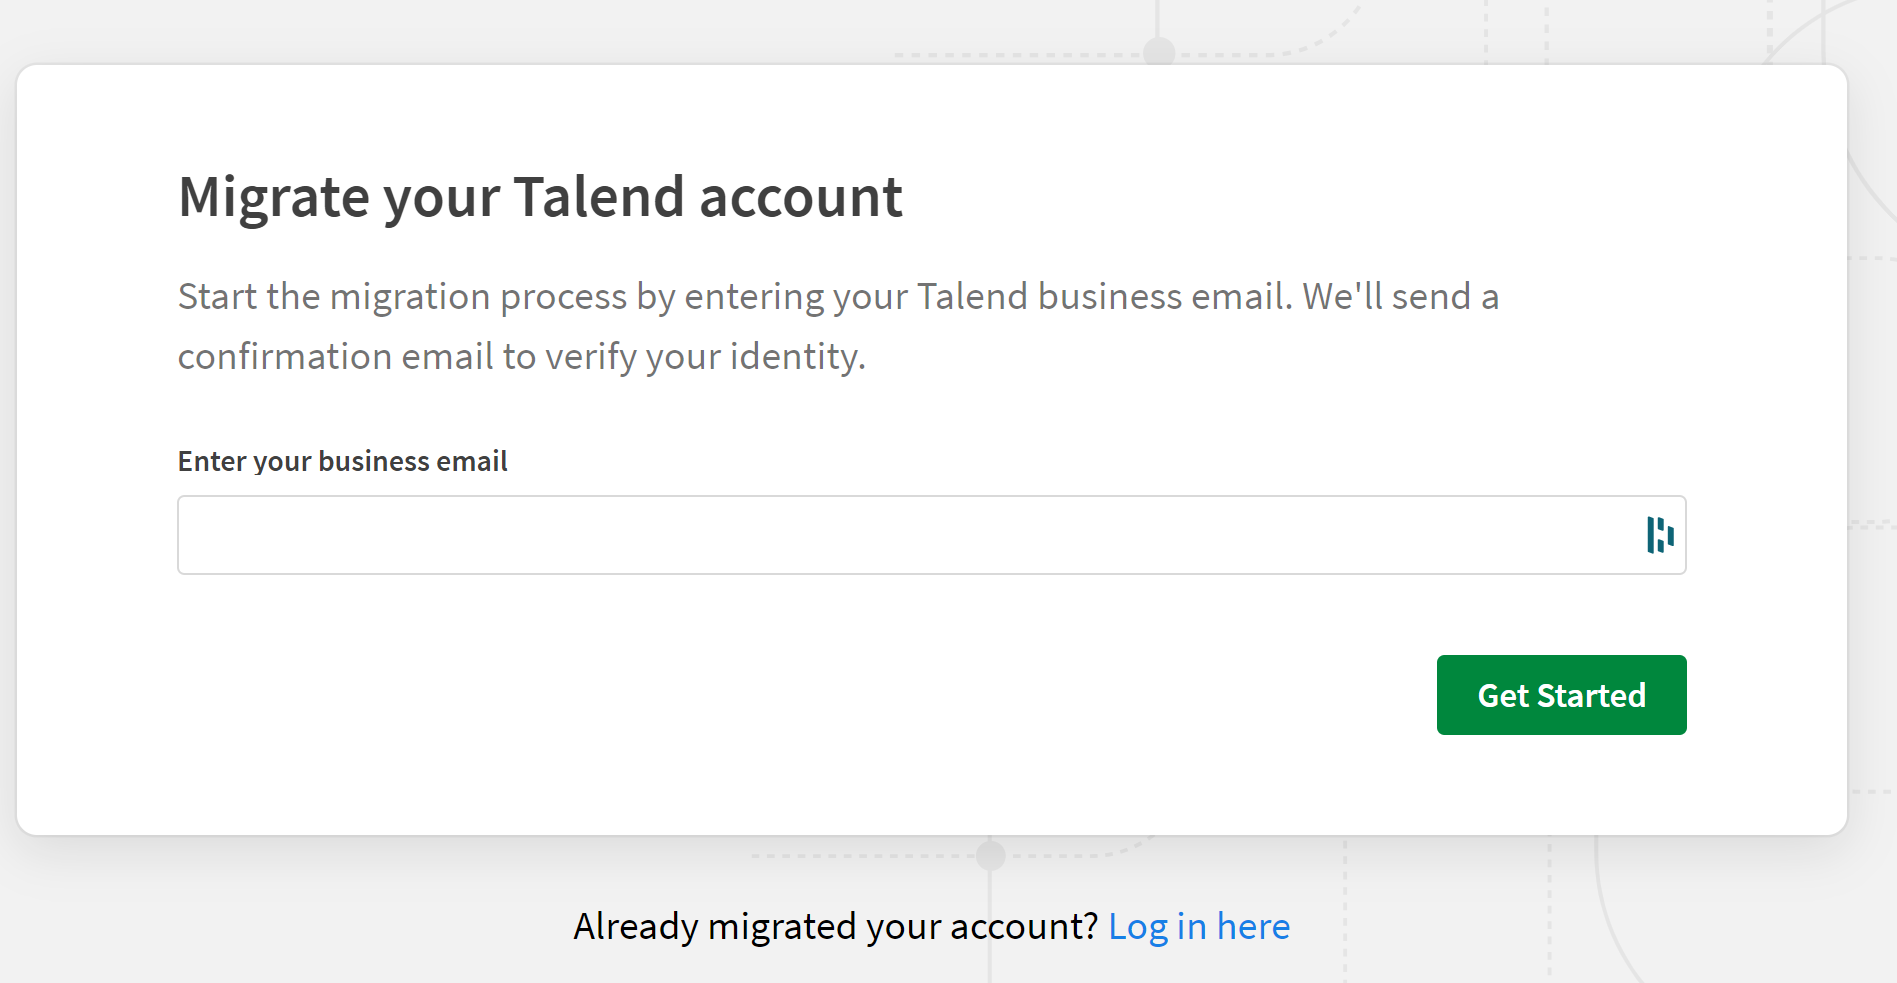 Assistant demandant de saisir votre adresse e-mail Talend pour démarrer la migration.